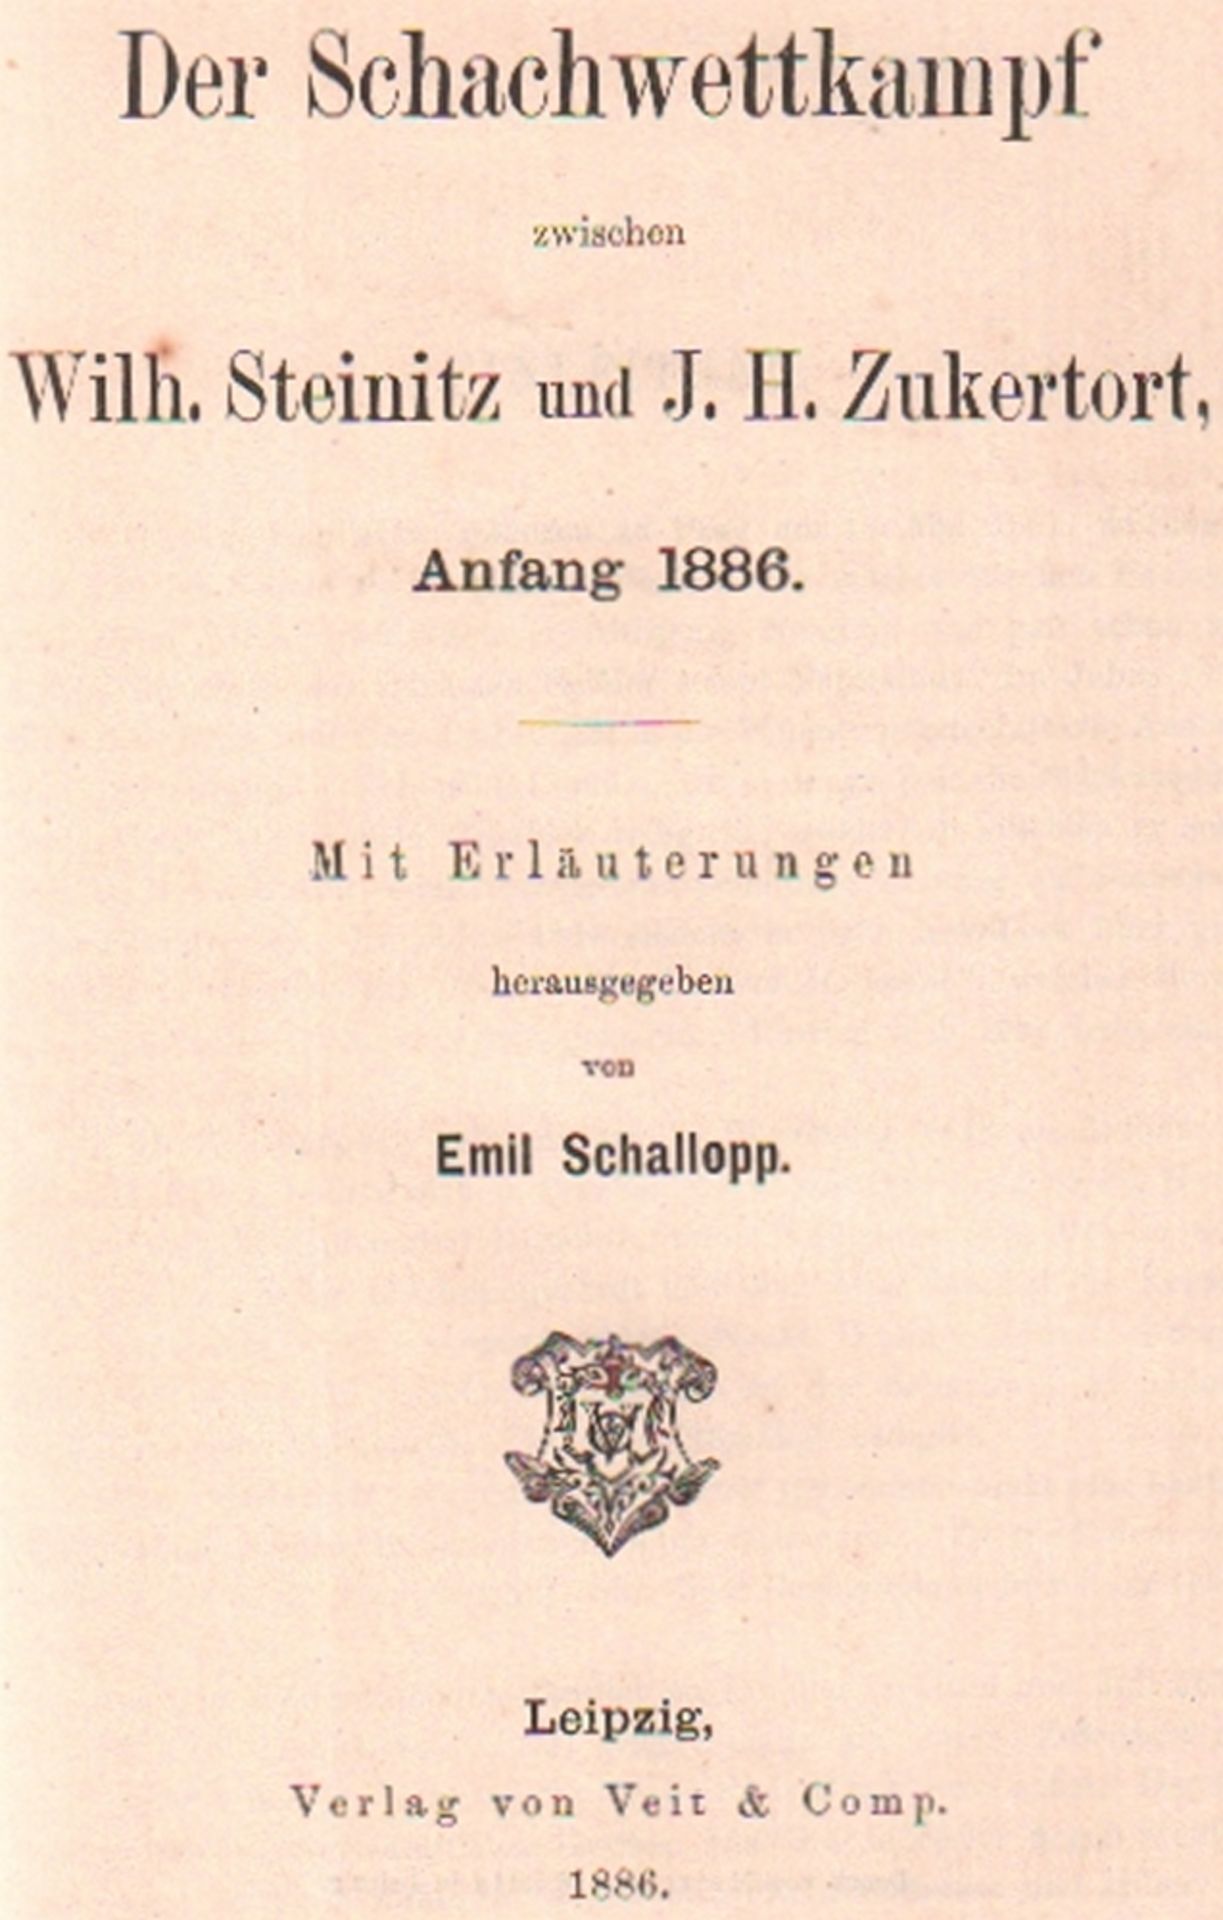 Steinitz - Zukertort. Schallopp, Emil. (Hrsg.) Der Schachwettkampf zwischen Wilh. Steinitz und J. H.